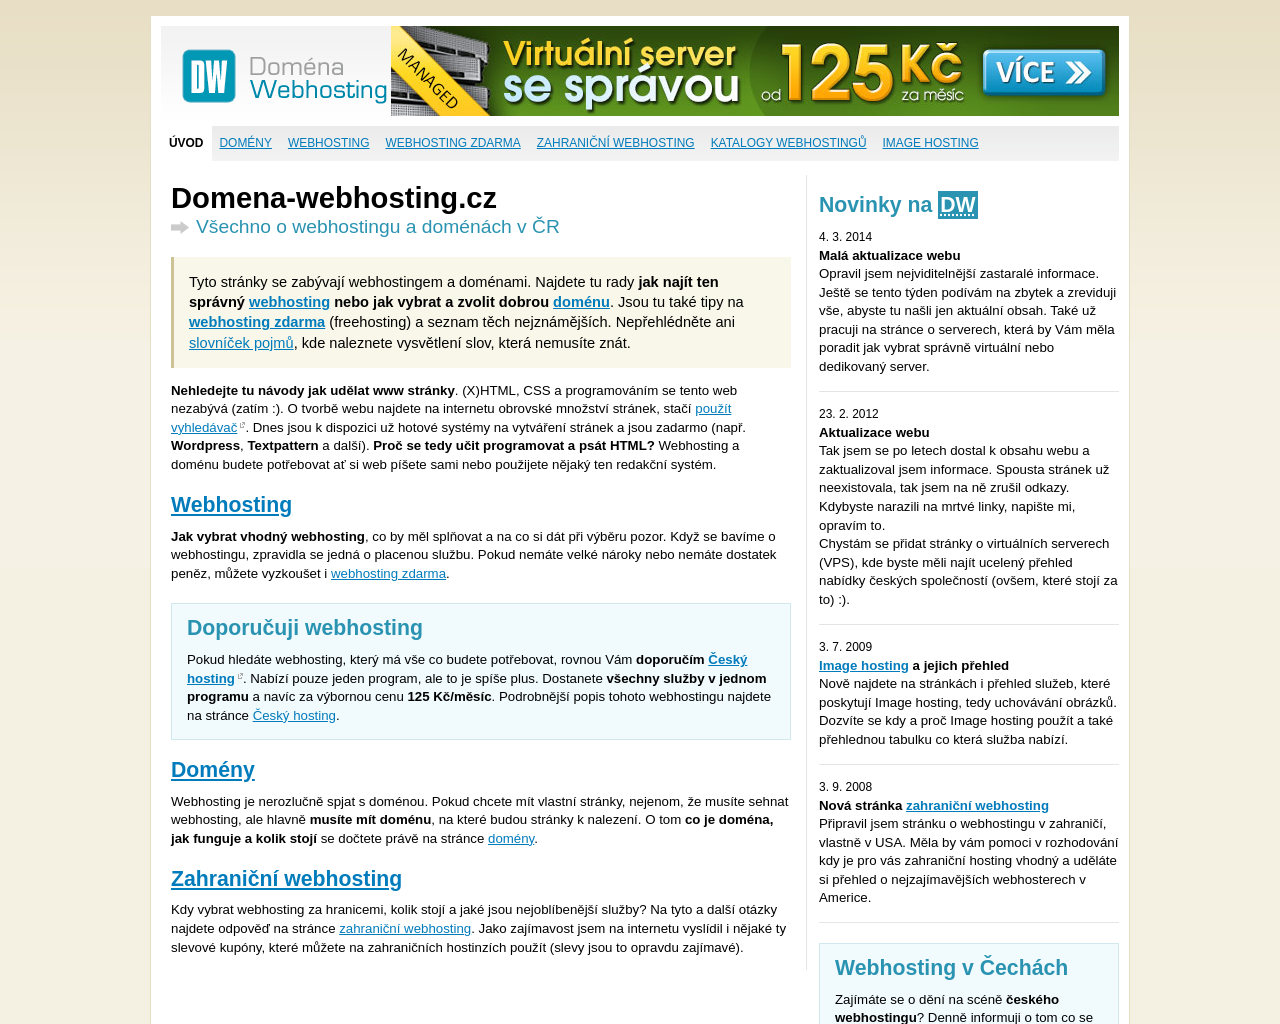 domena-webhosting.cz